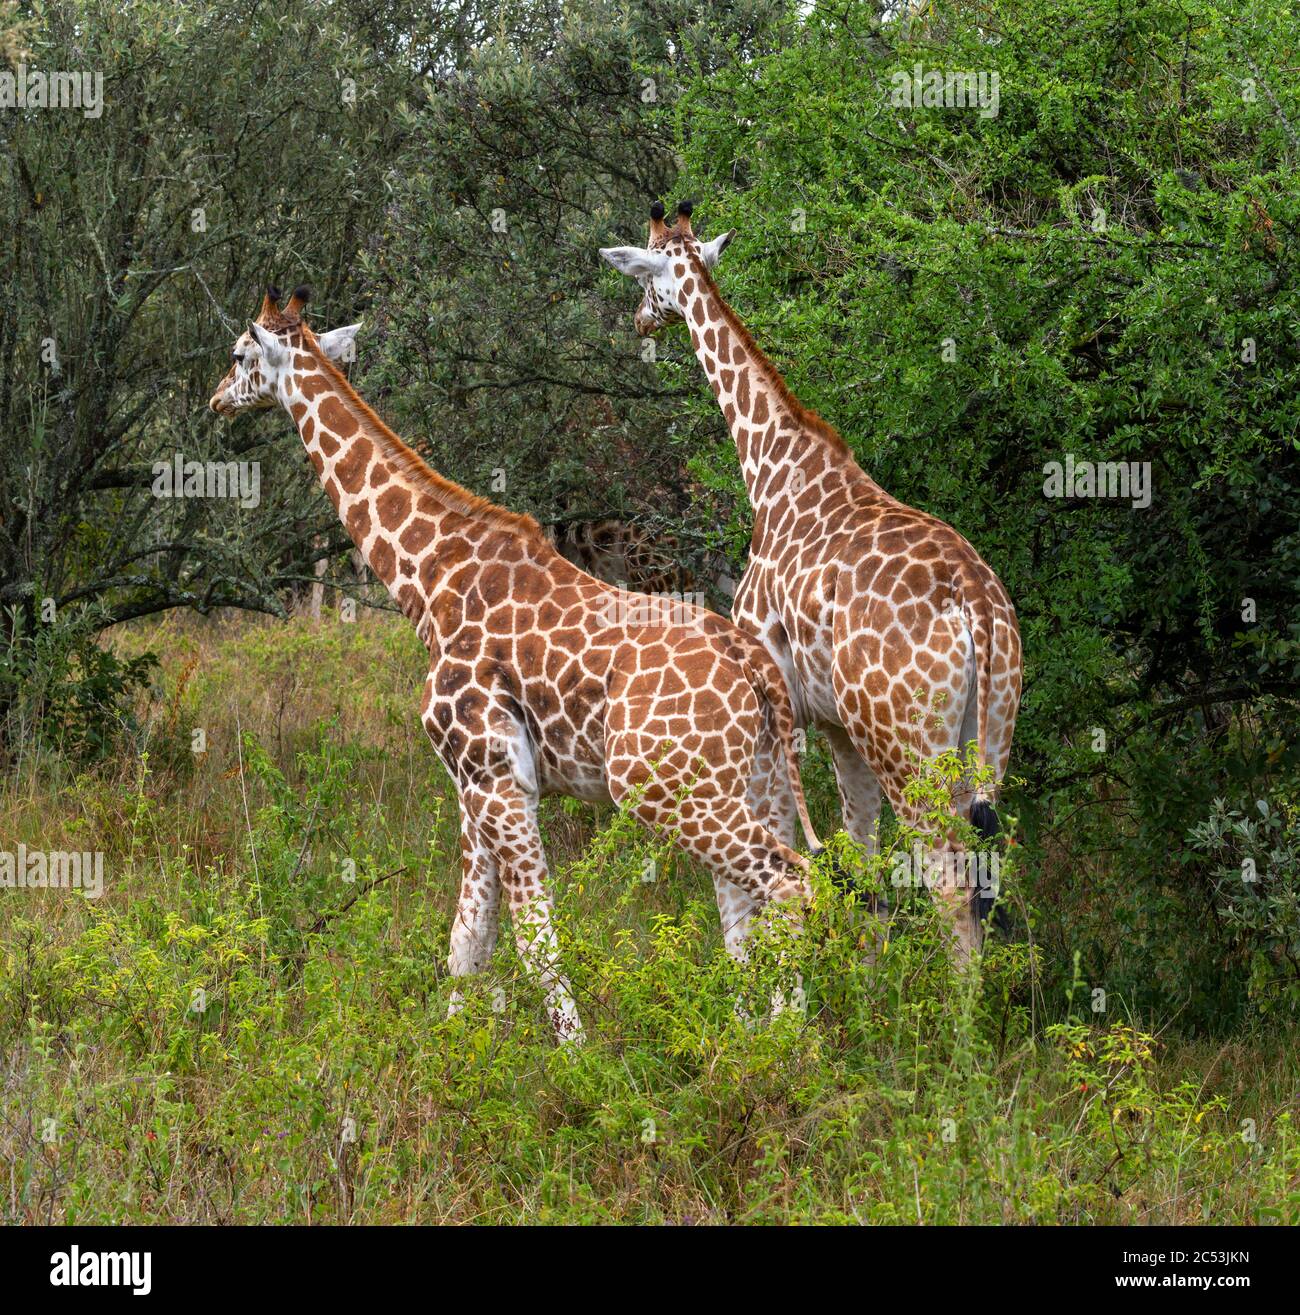 Pair of Rothschild's giraffe (Giraffa camelopardalis rothschildi), Lake Nakuru National Park, Kenya, Africa Stock Photo